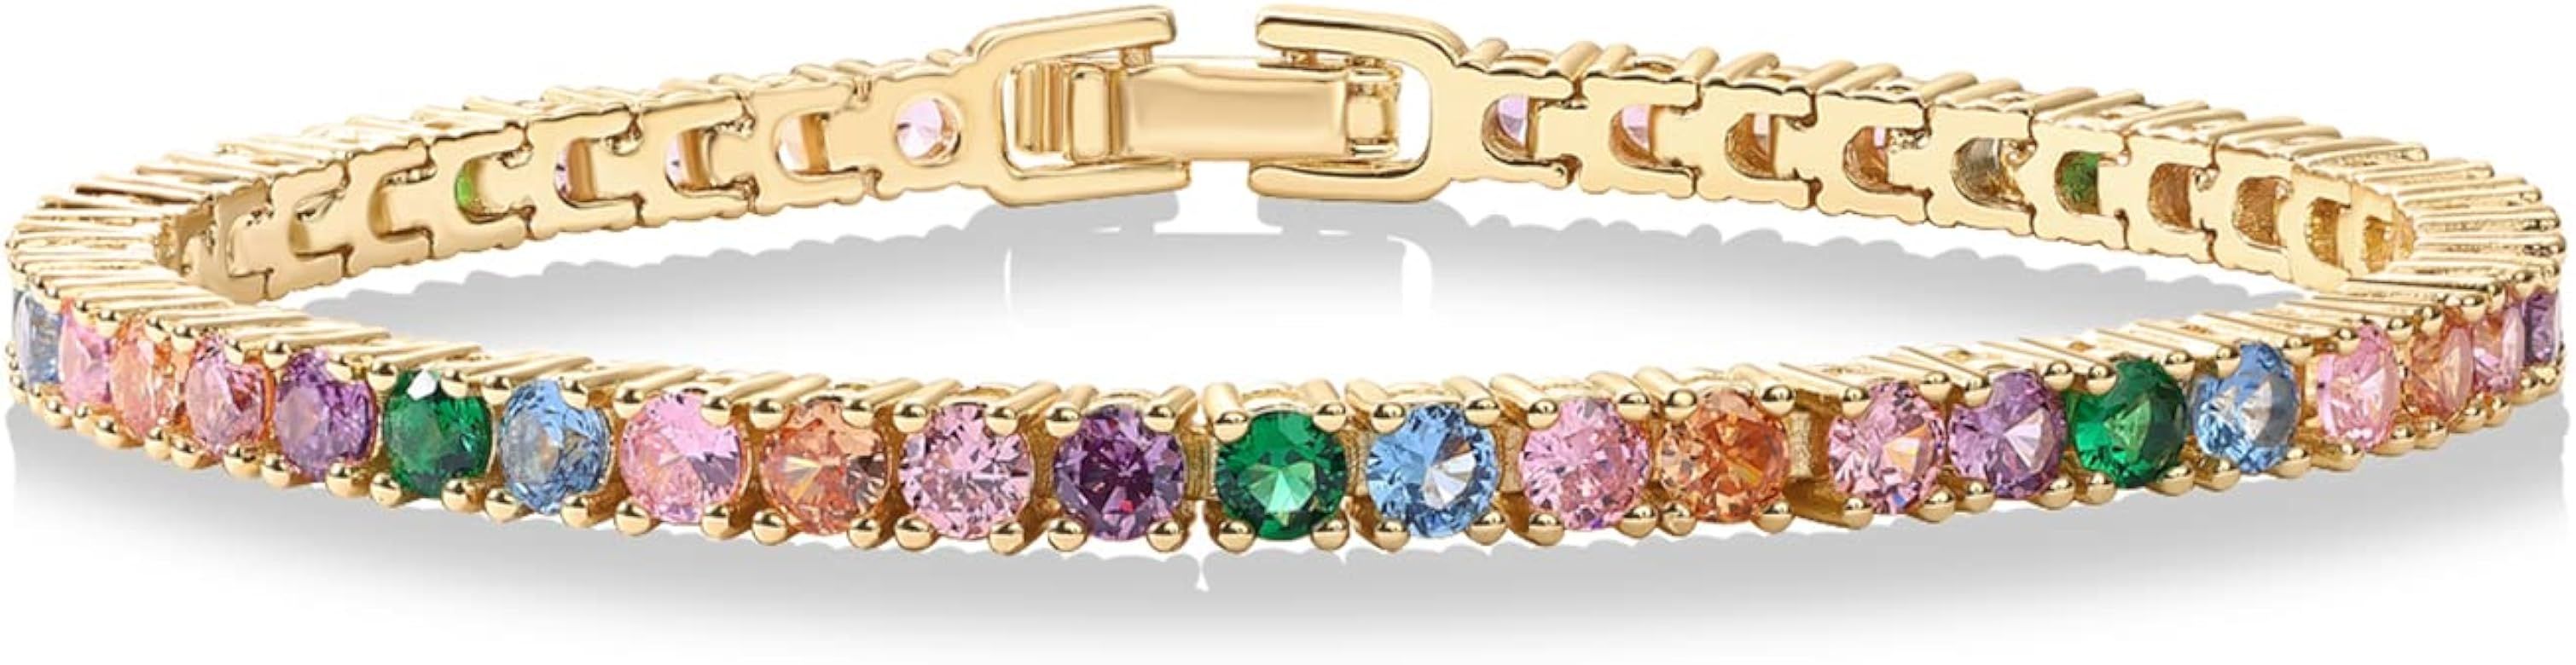 PAVOI 14K Gold Plated 3mm Multicolored CZ Tennis Bracelet | Bracelet for Women | Size 6.5-7.5 Inc... | Amazon (US)